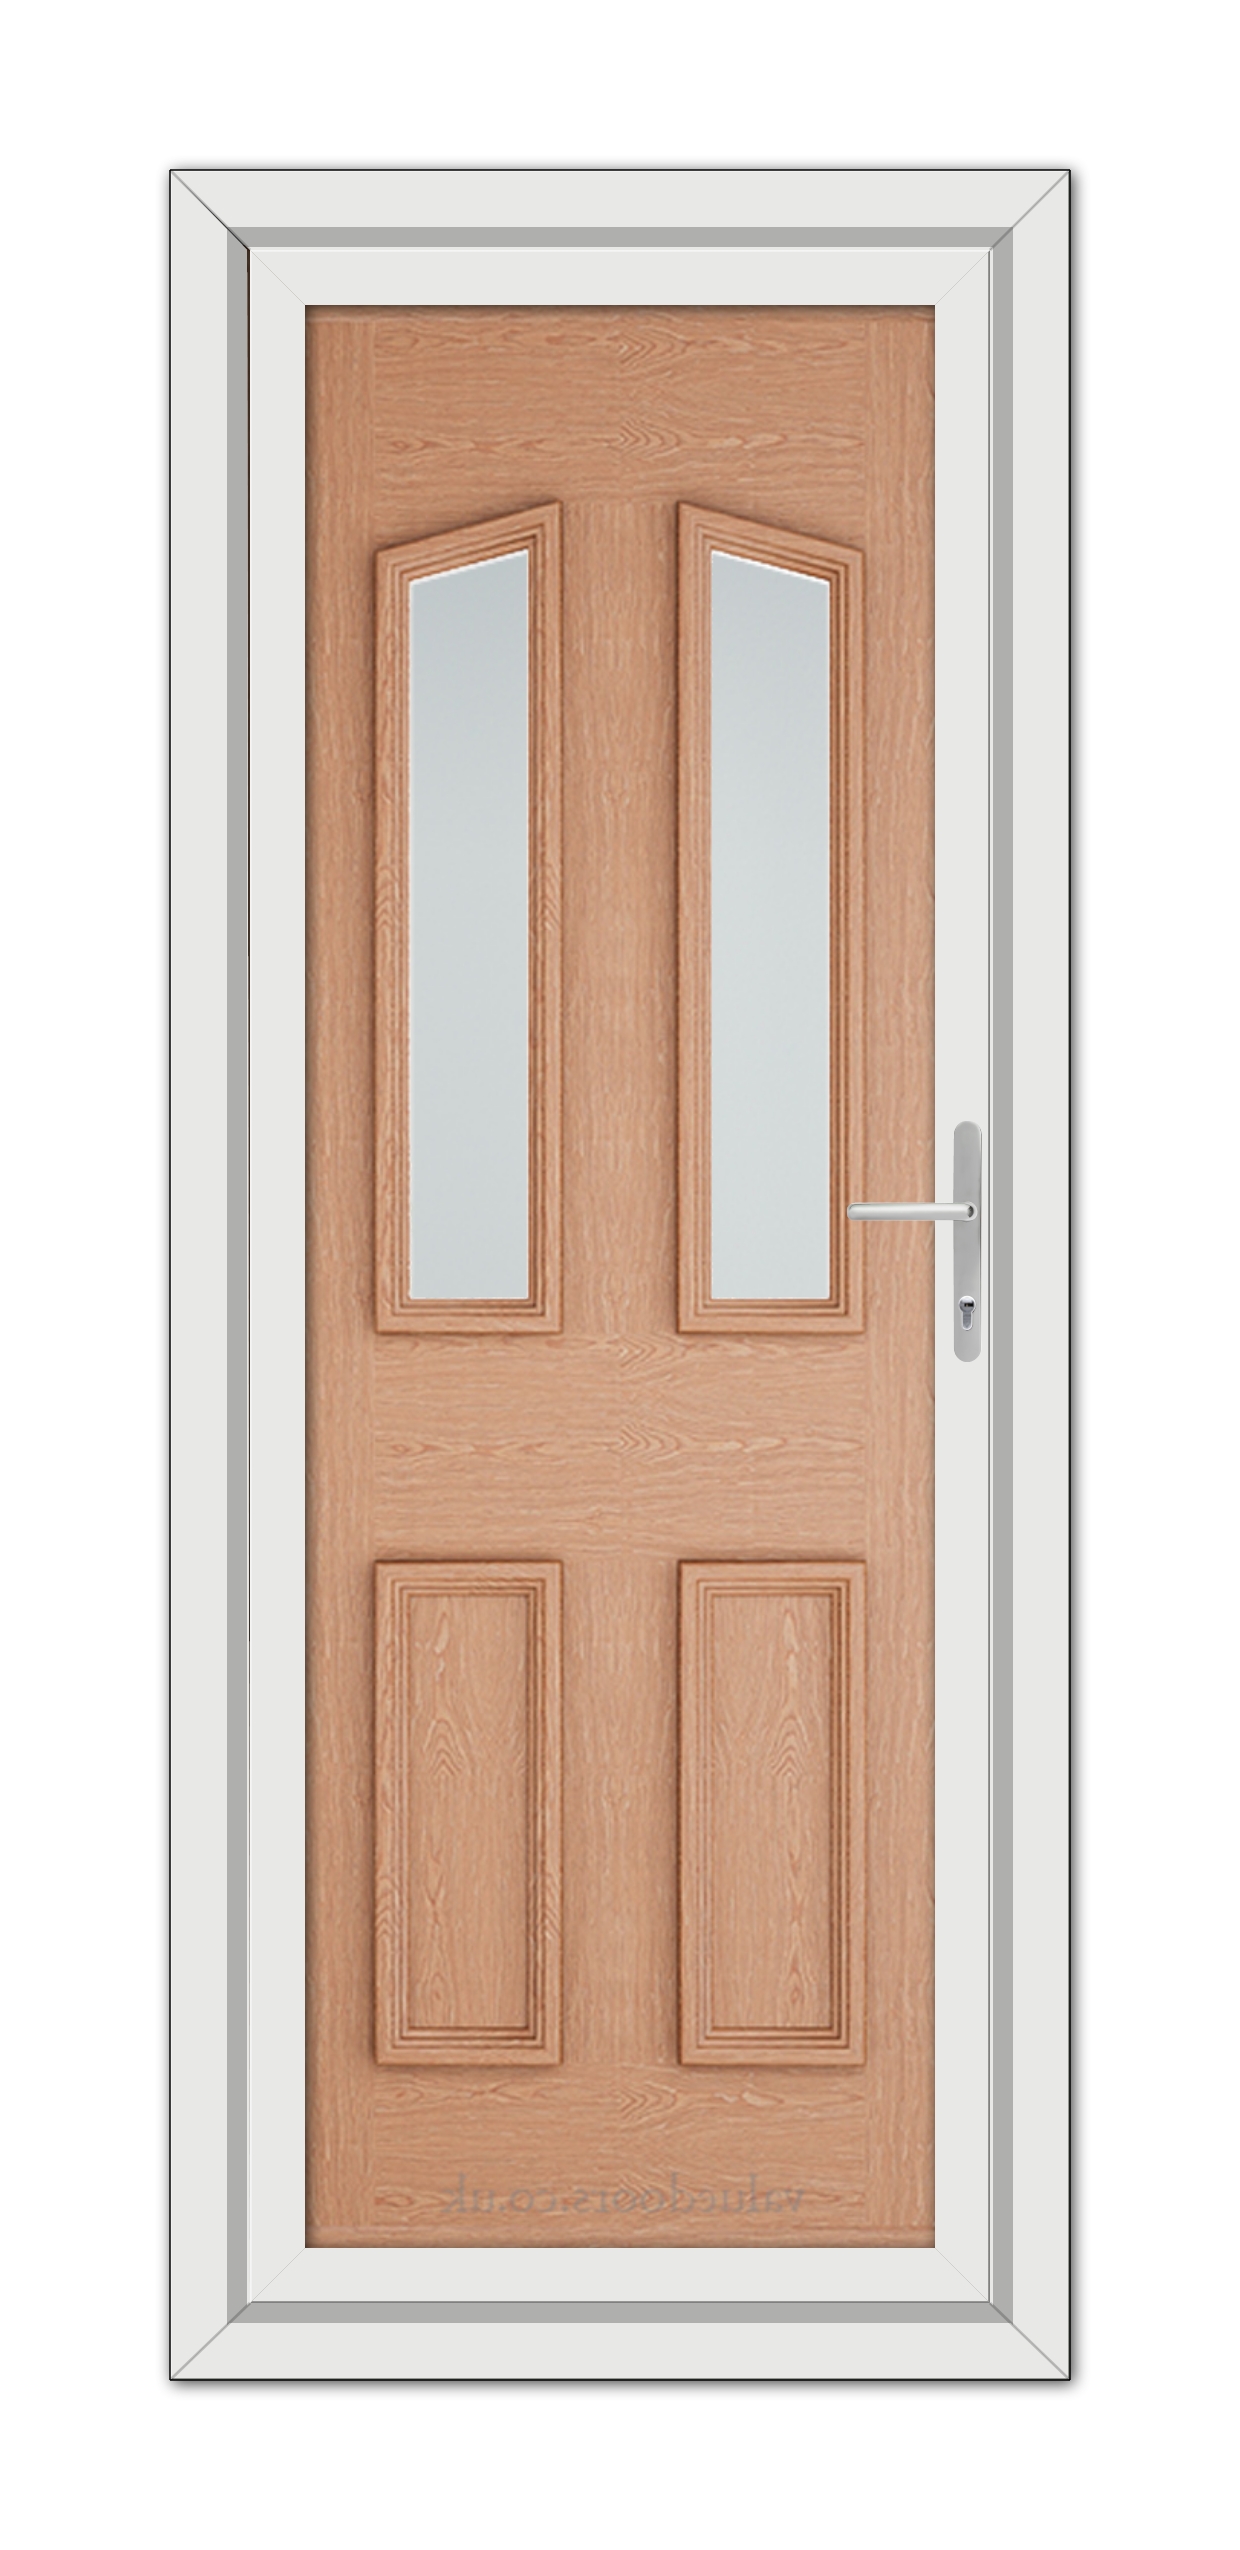 A close-up of an Irish Oak Kensington uPVC Door.